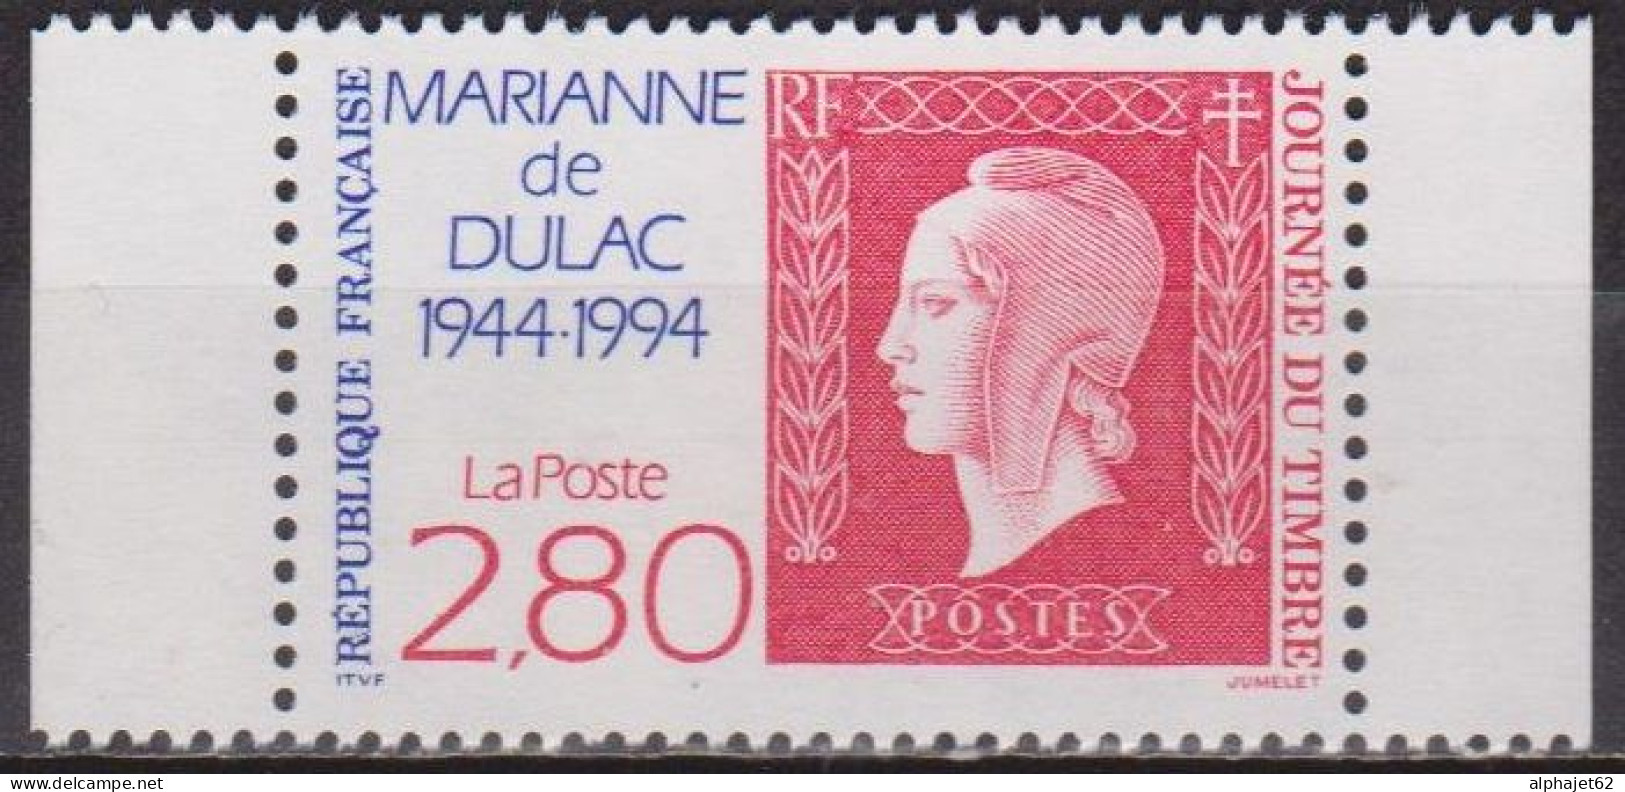 Marianne De Dulac - FRANCE - Cinquantenaire, Timbre De Carnet: N° 2863 A **  - 1994 - Unused Stamps